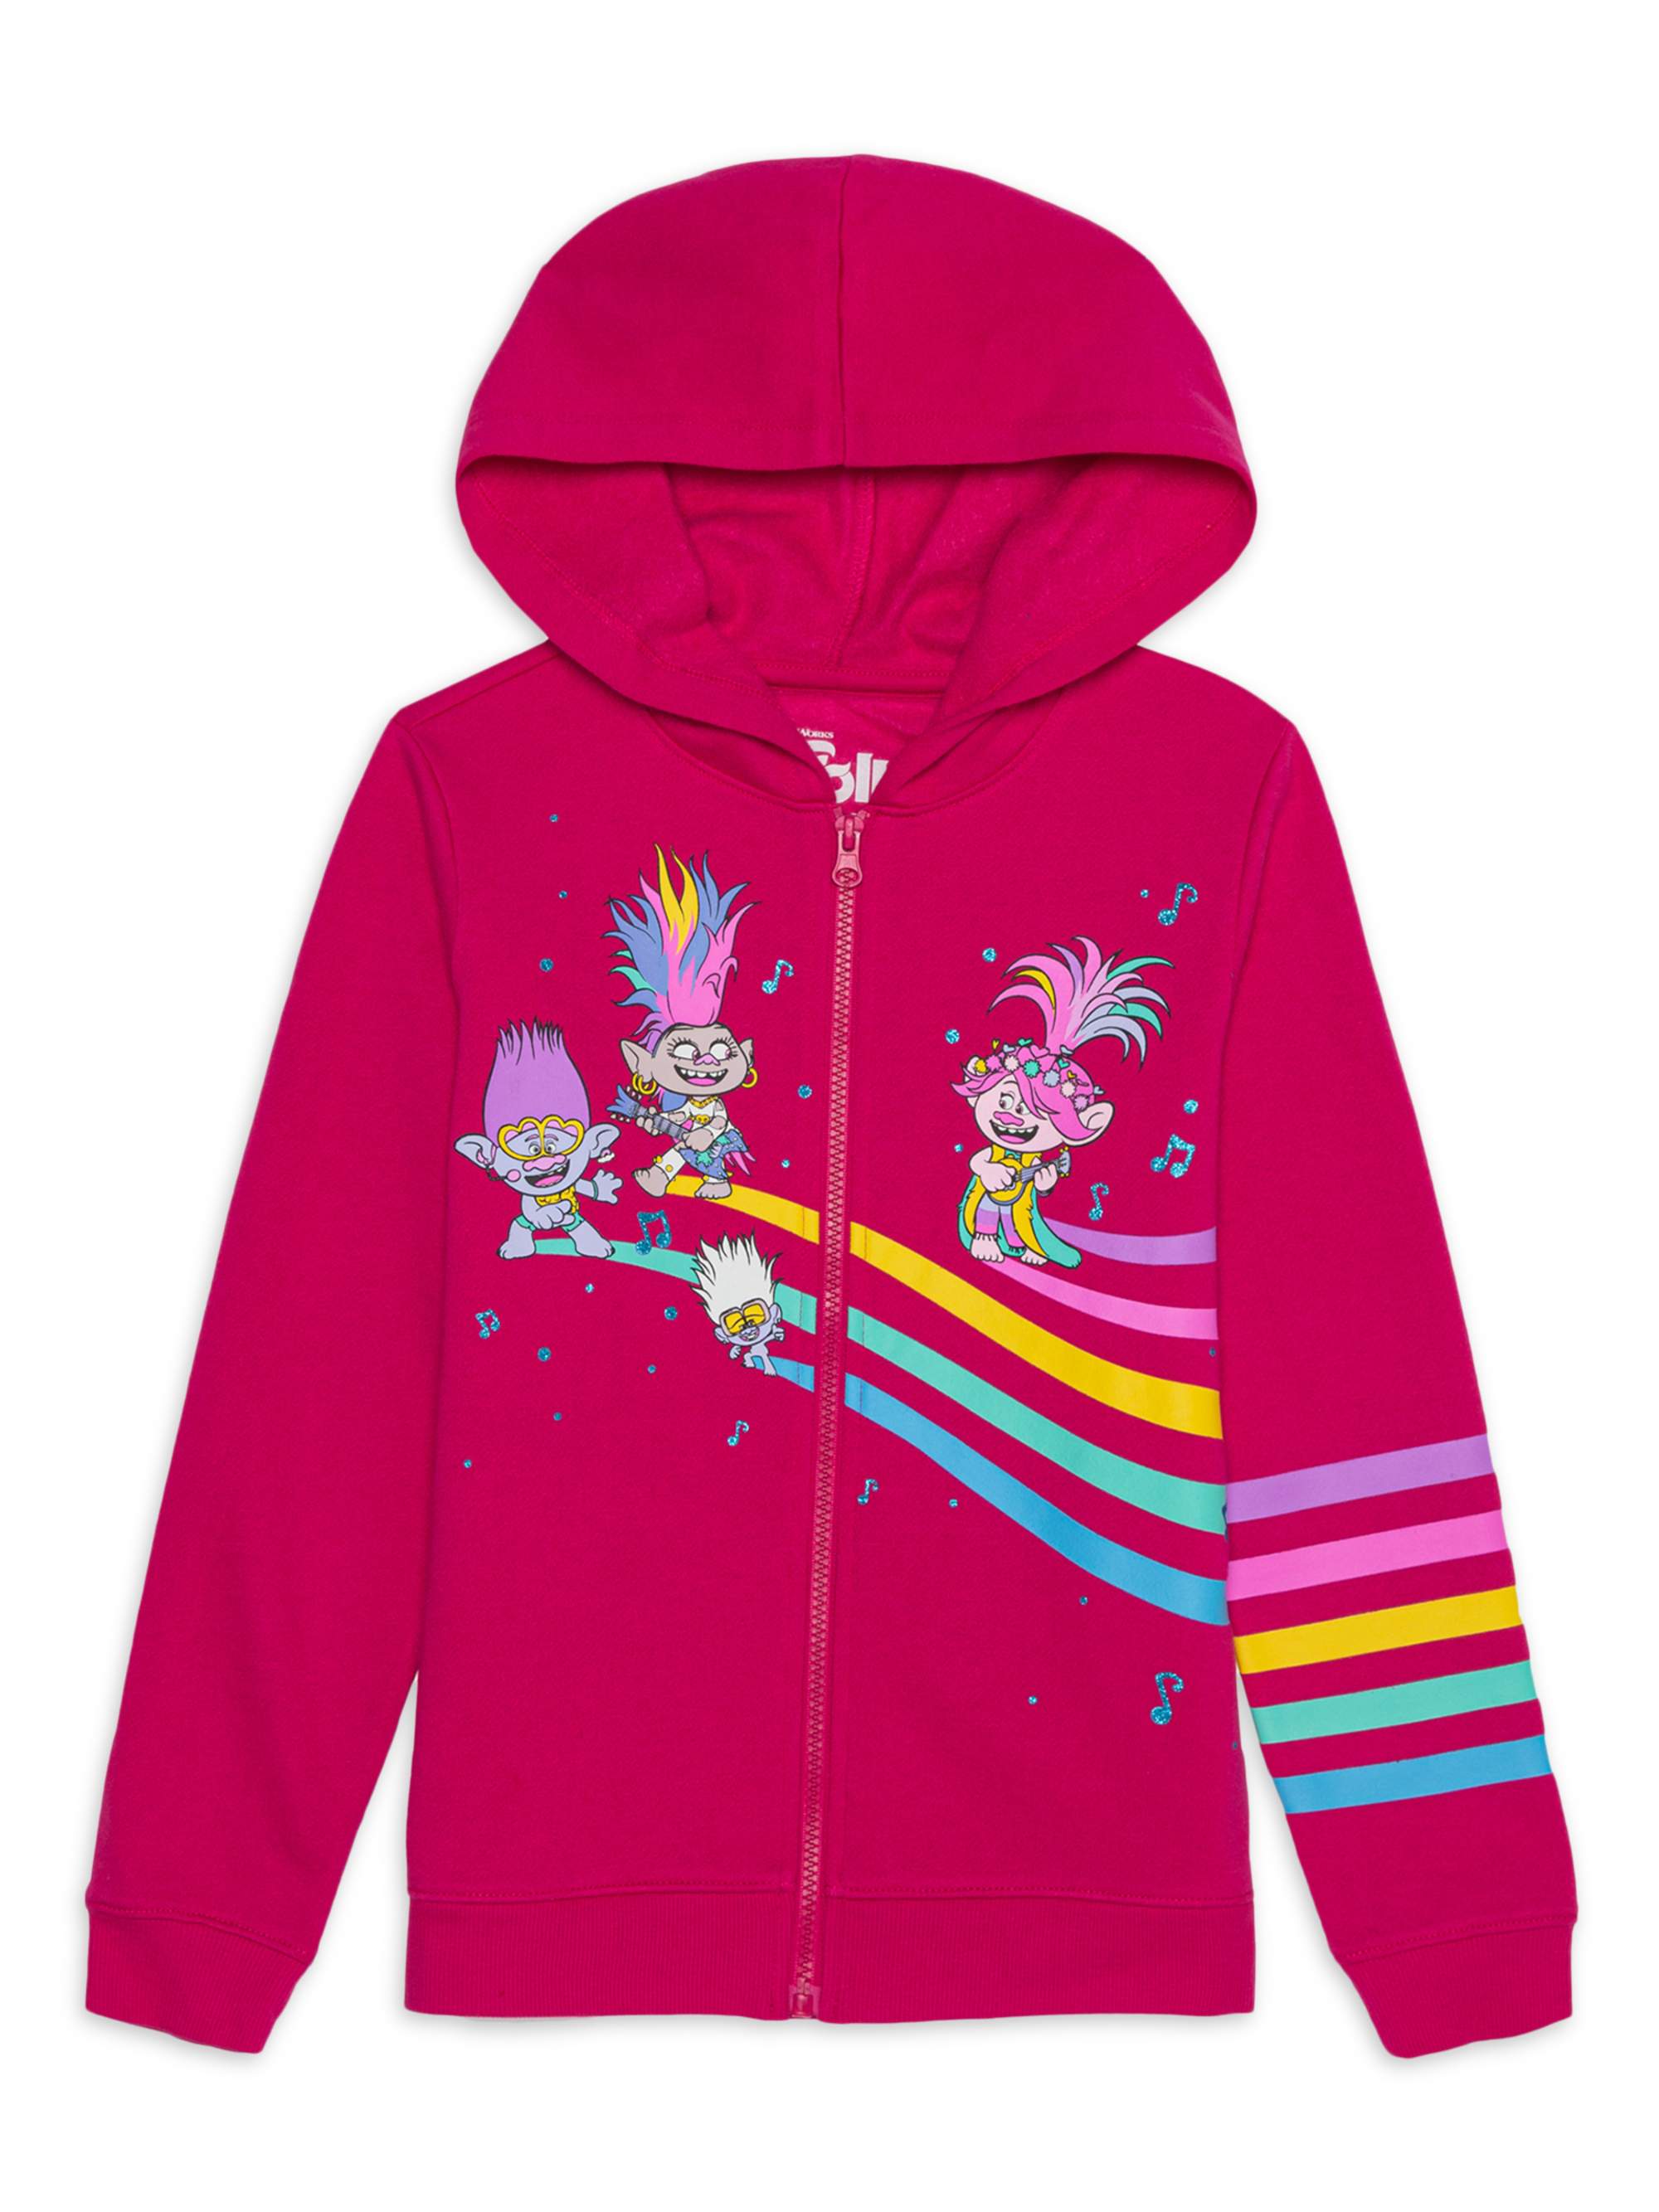 Universal Trolls Poppy Girls Glitter Rainbow Zip-Up Hoodie, Sizes 4-16 - image 1 of 3